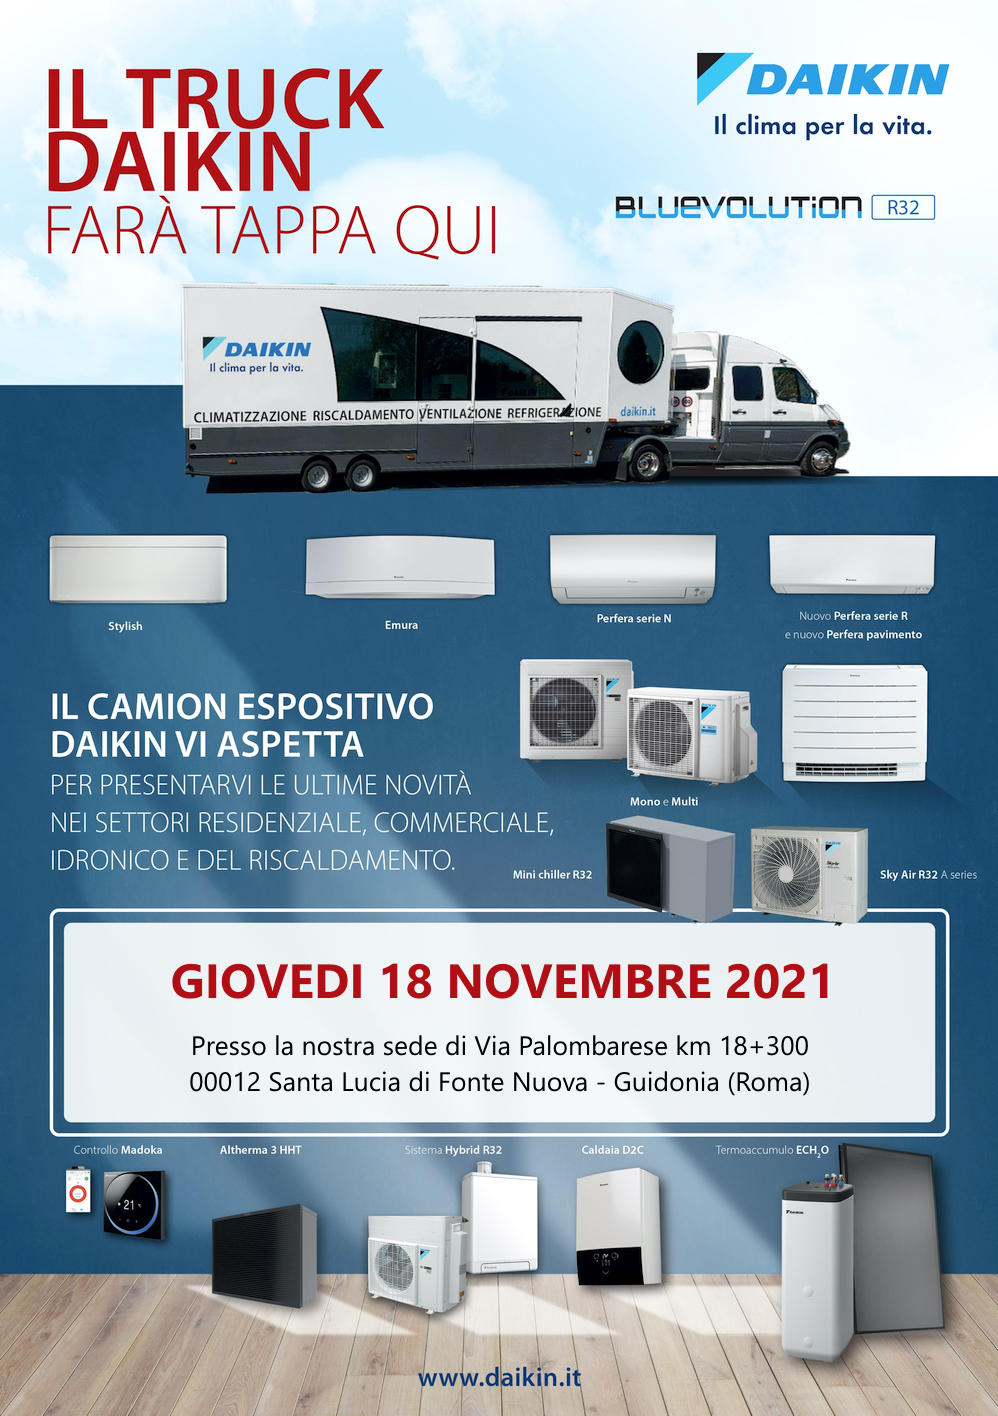 Daikin Truck, tappa giovedi 18 novembre 2021 presso la Termoidraulica Nigrelli di Guidonia, Roma